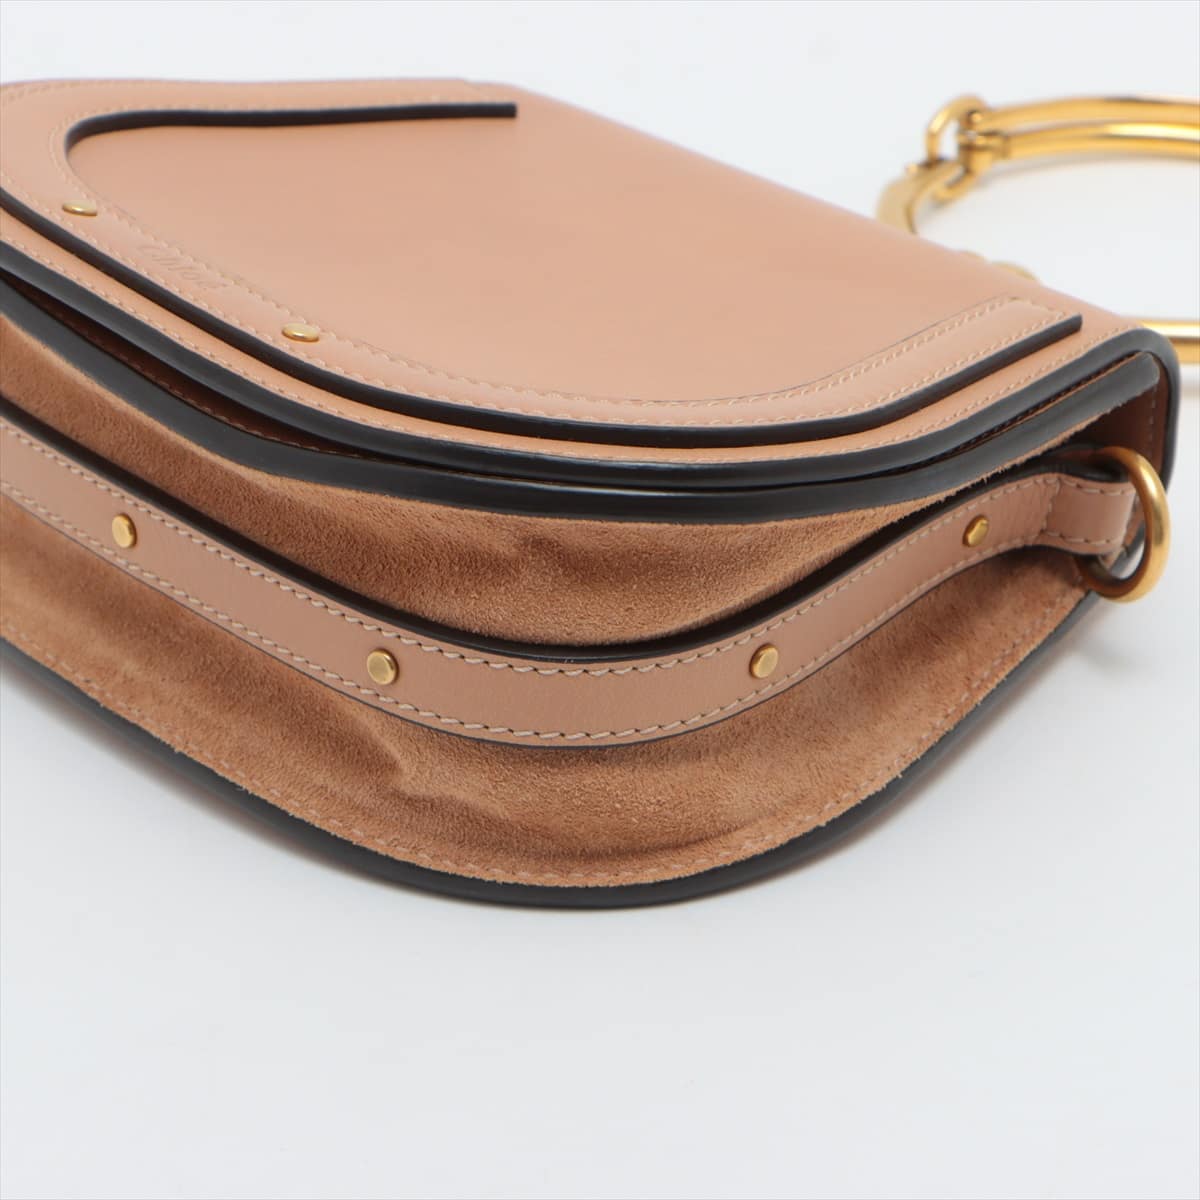 Chloe Nile Leather 2way shoulder bag Beige